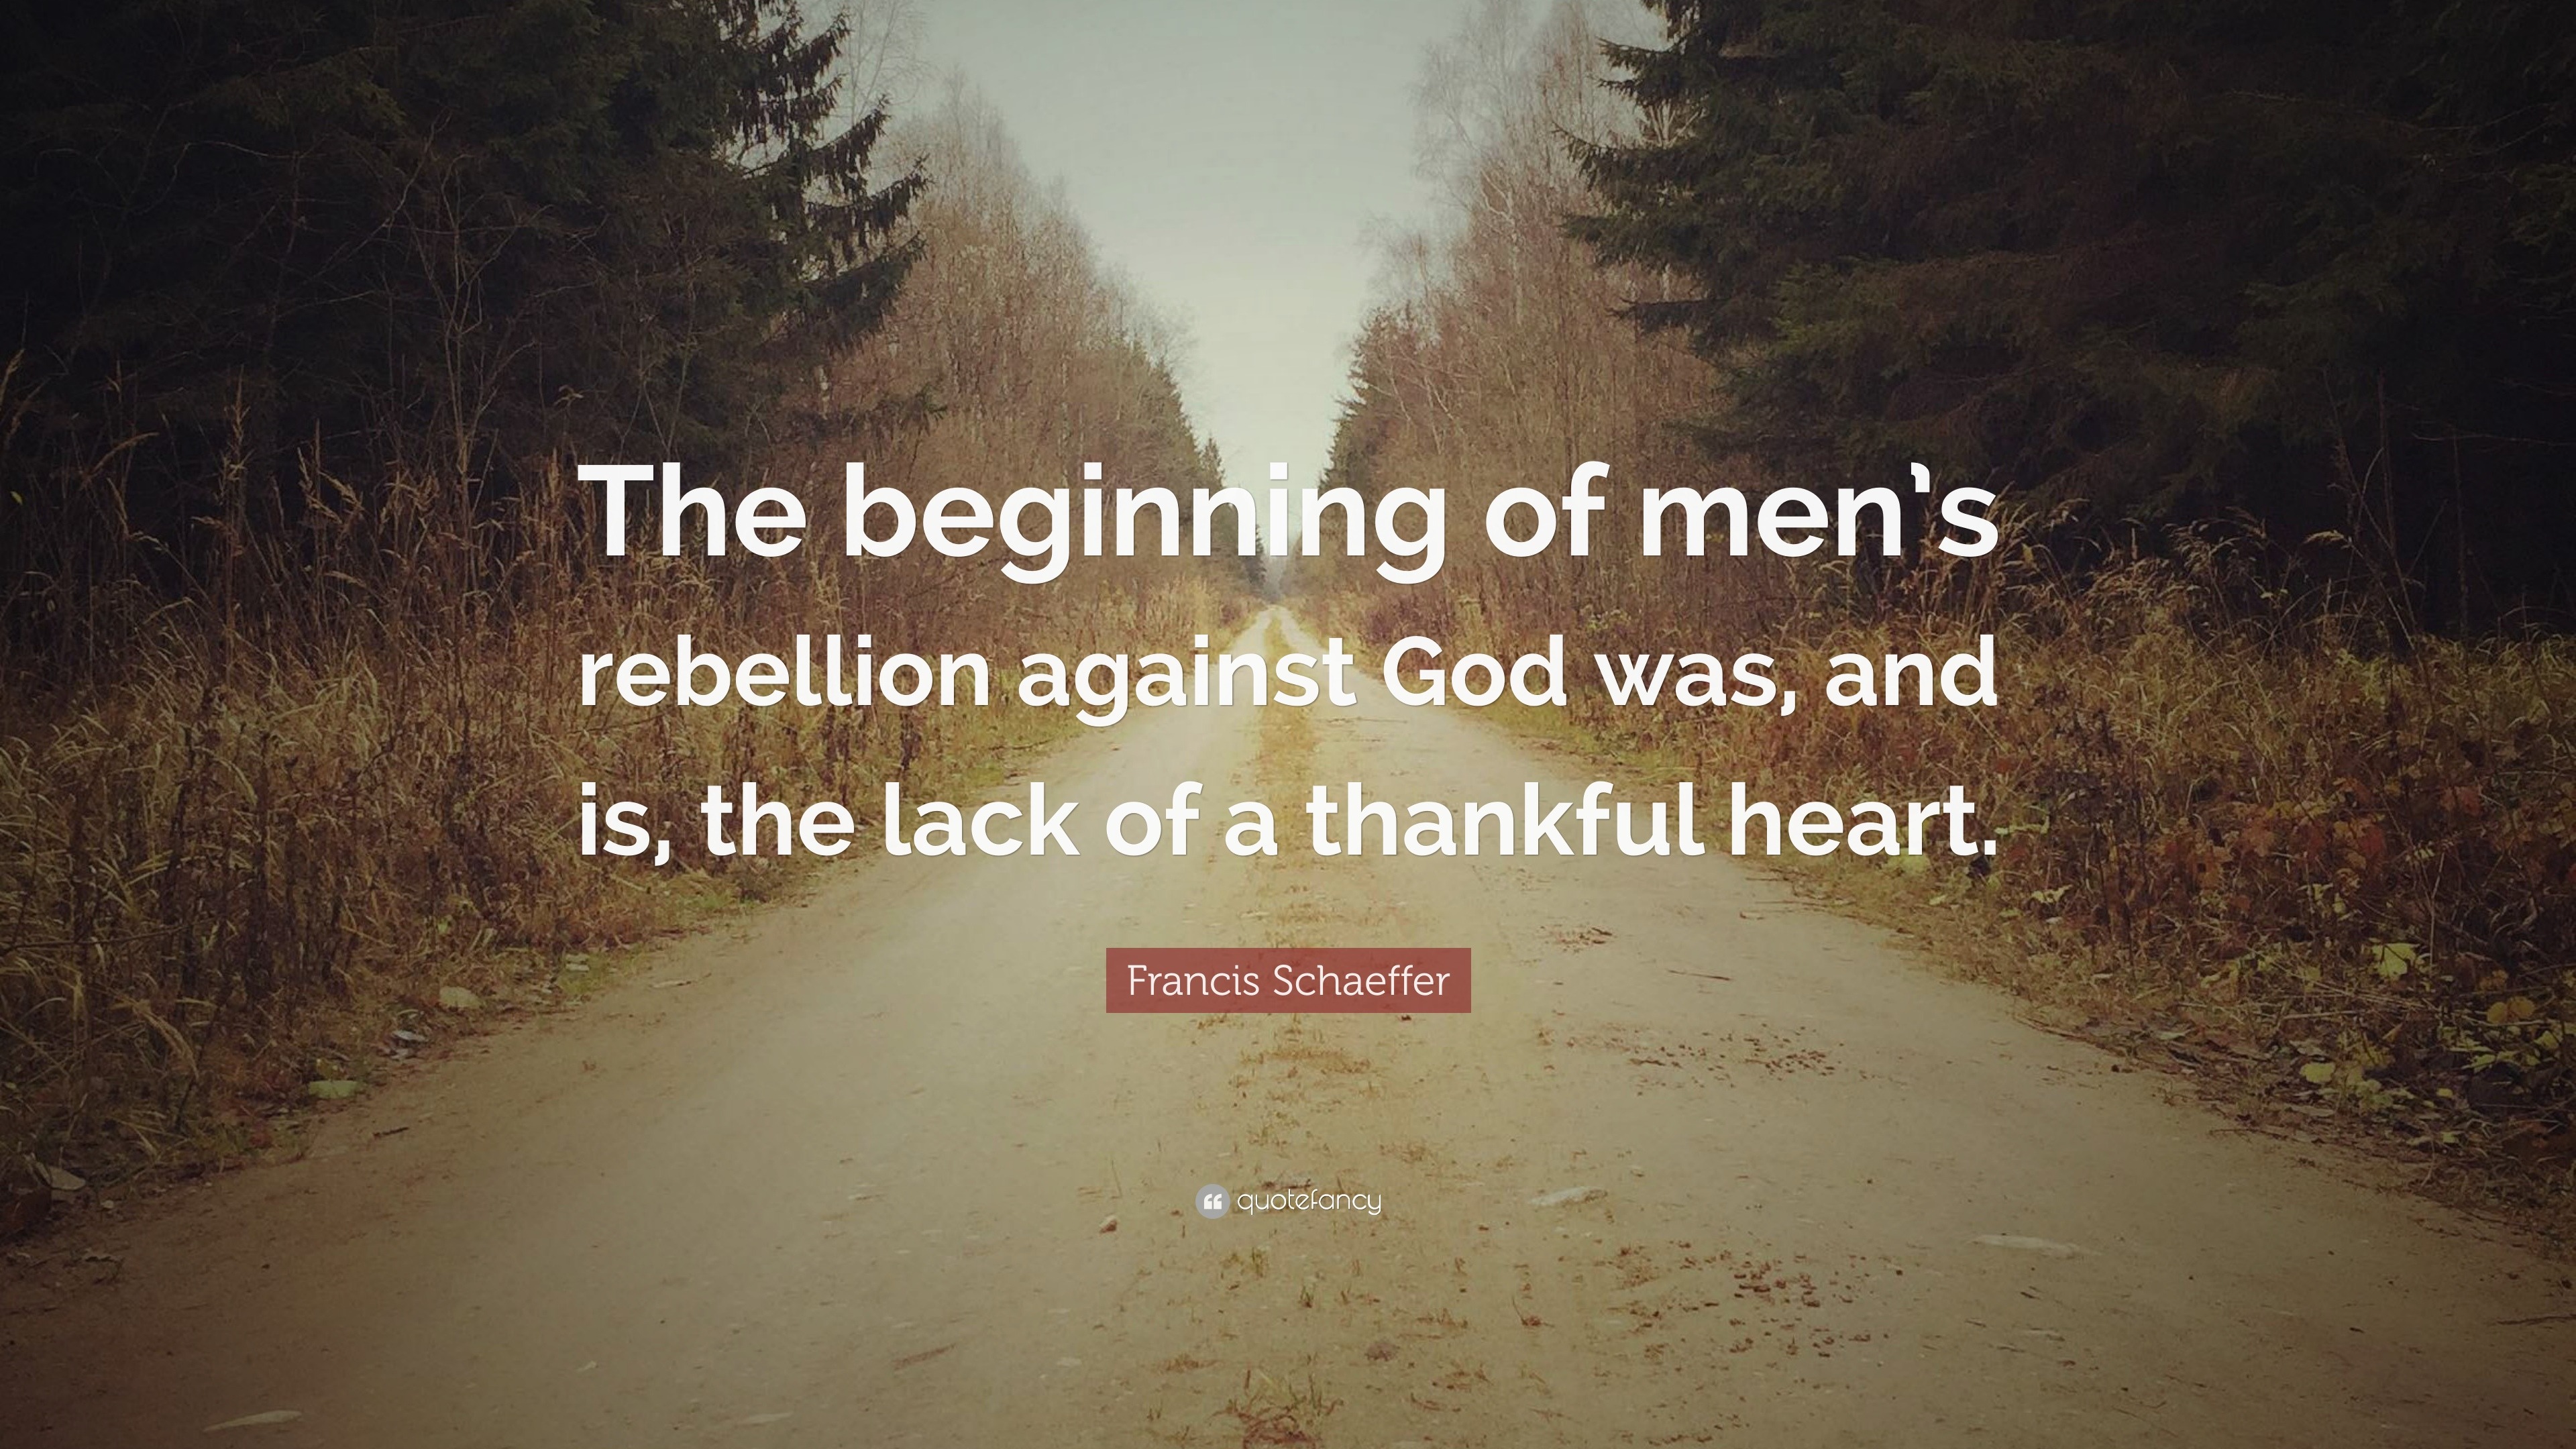 Francis Schaeffer Quote “The beginning of men’s rebellion against God